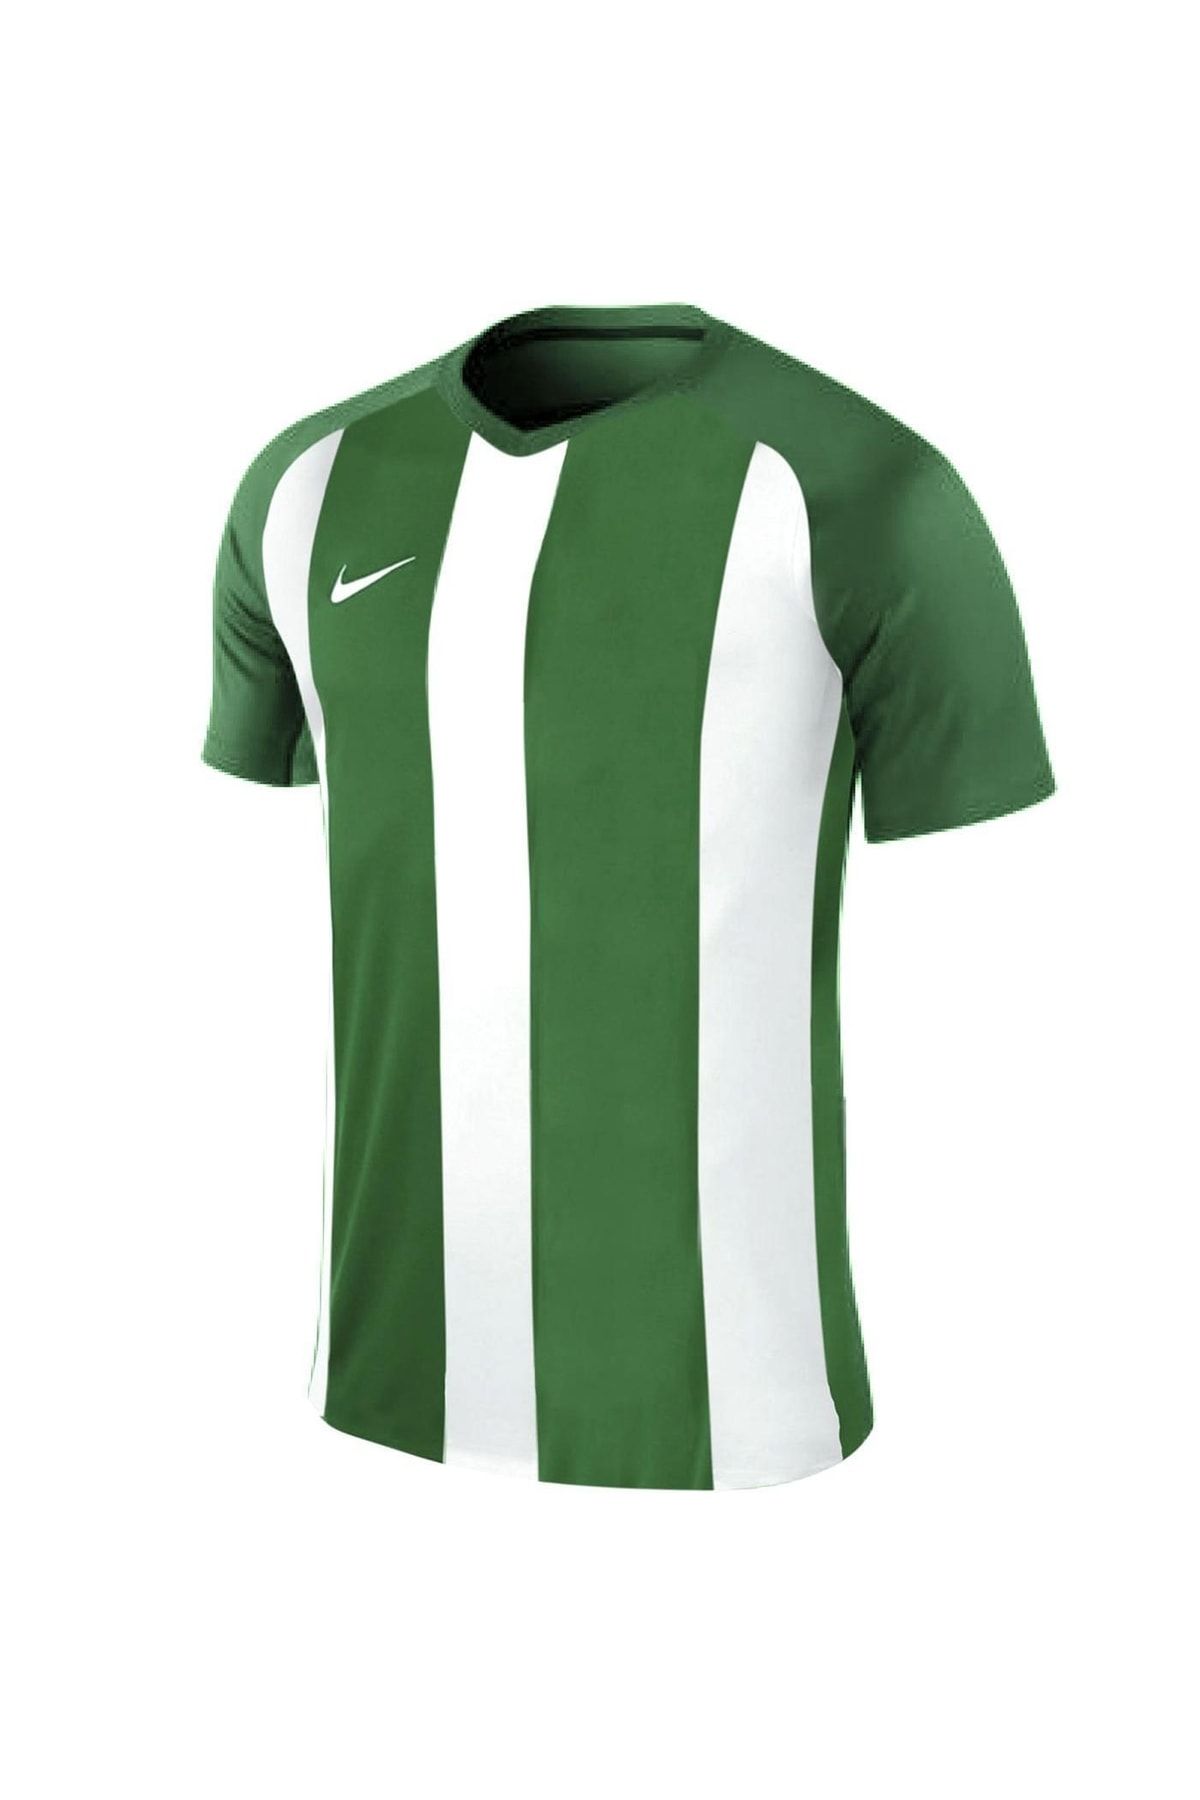 Nike Jersey Çocuk Yeşil Futbol Forma 894156-302